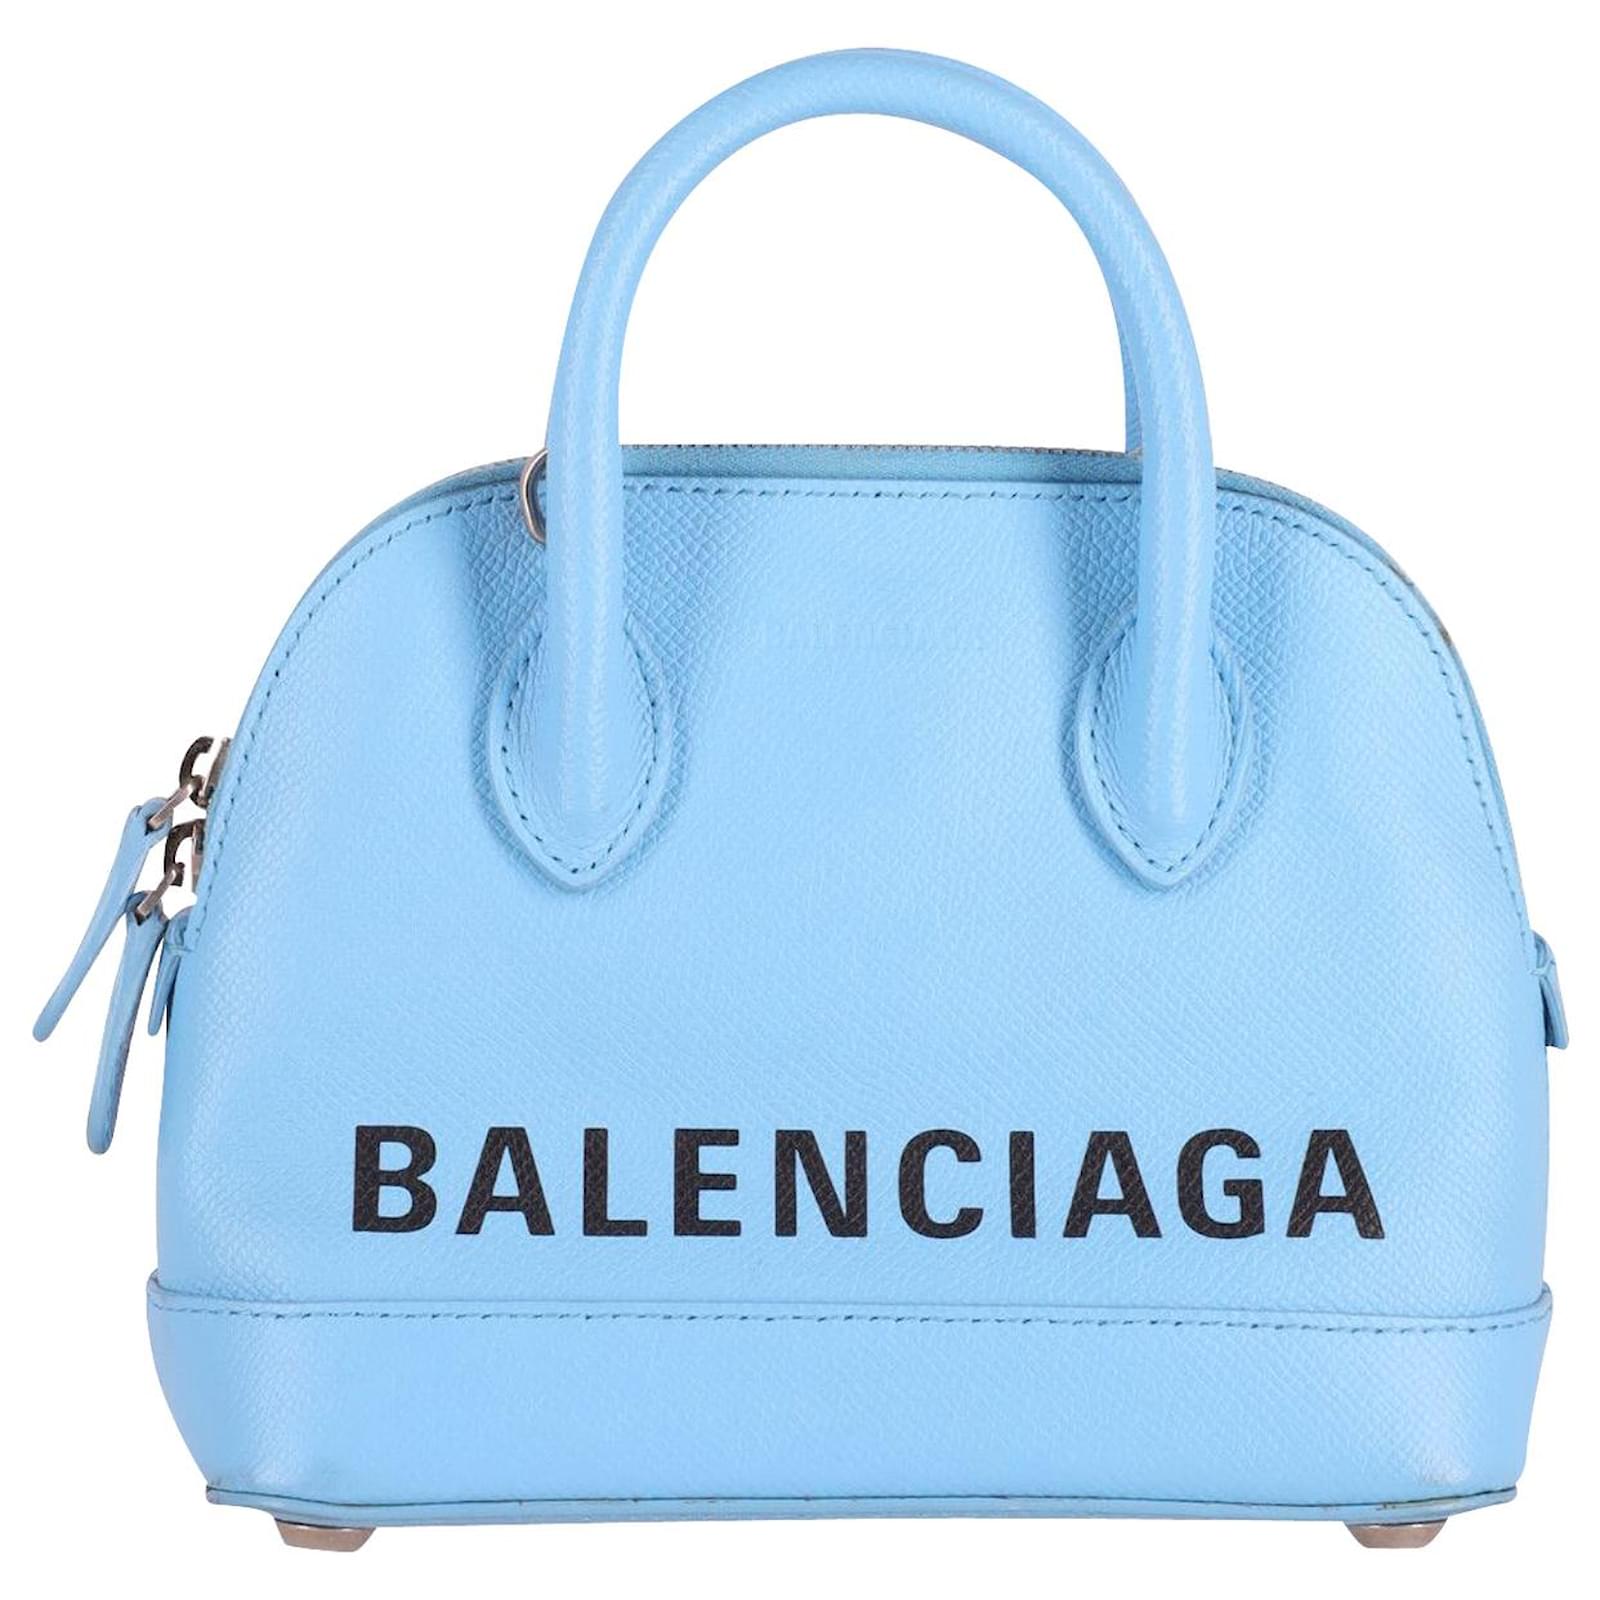 Light Blue Balenciaga Bag Top Sellers  xevietnamcom 1686251044